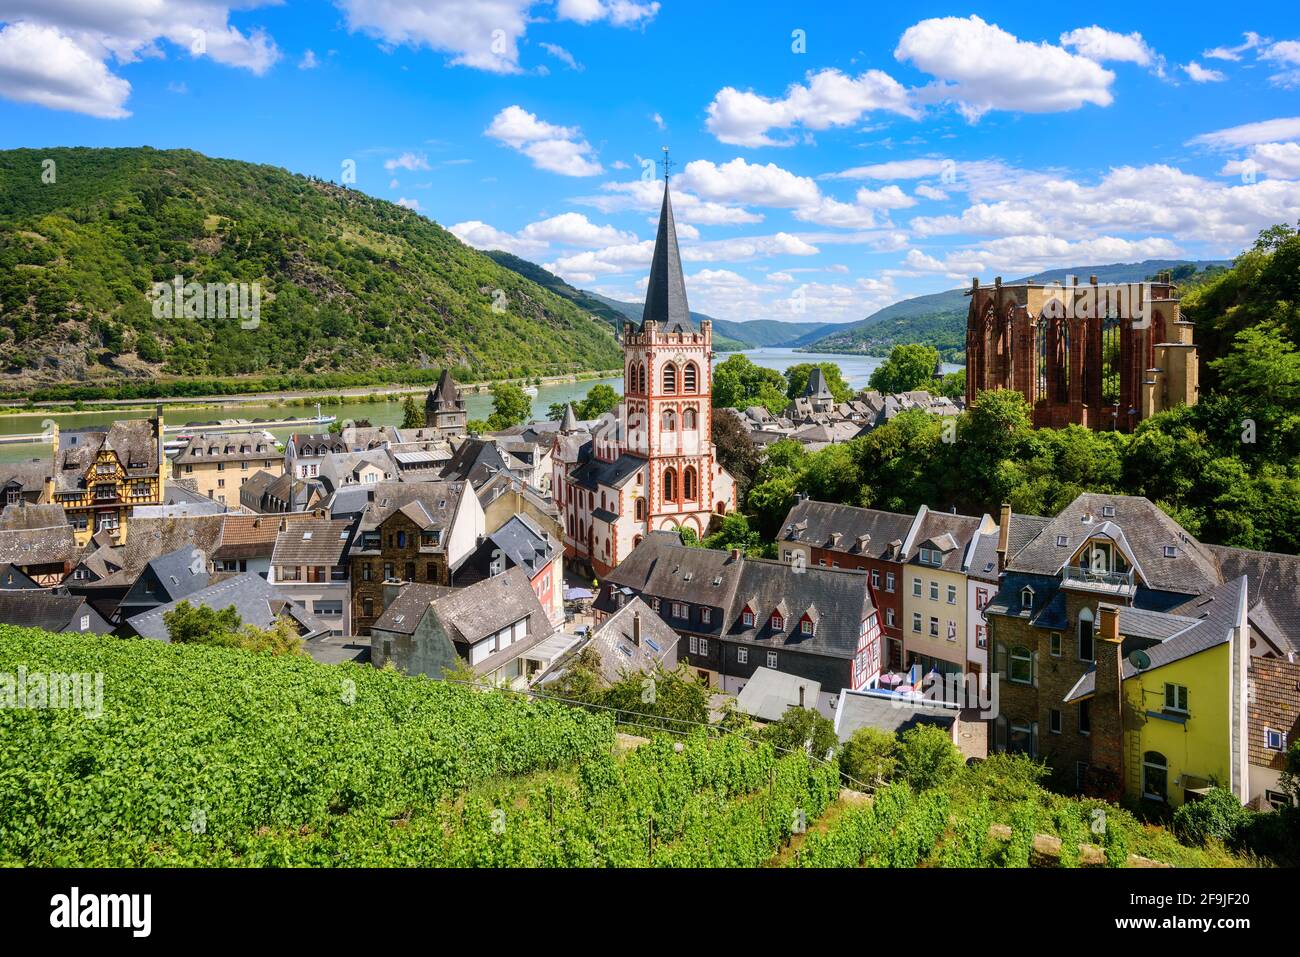 Bacharach am Rhein ville, Allemagne, célèbre pour ses collines de vignobles et son emplacement romantique dans une vallée du Rhin Banque D'Images